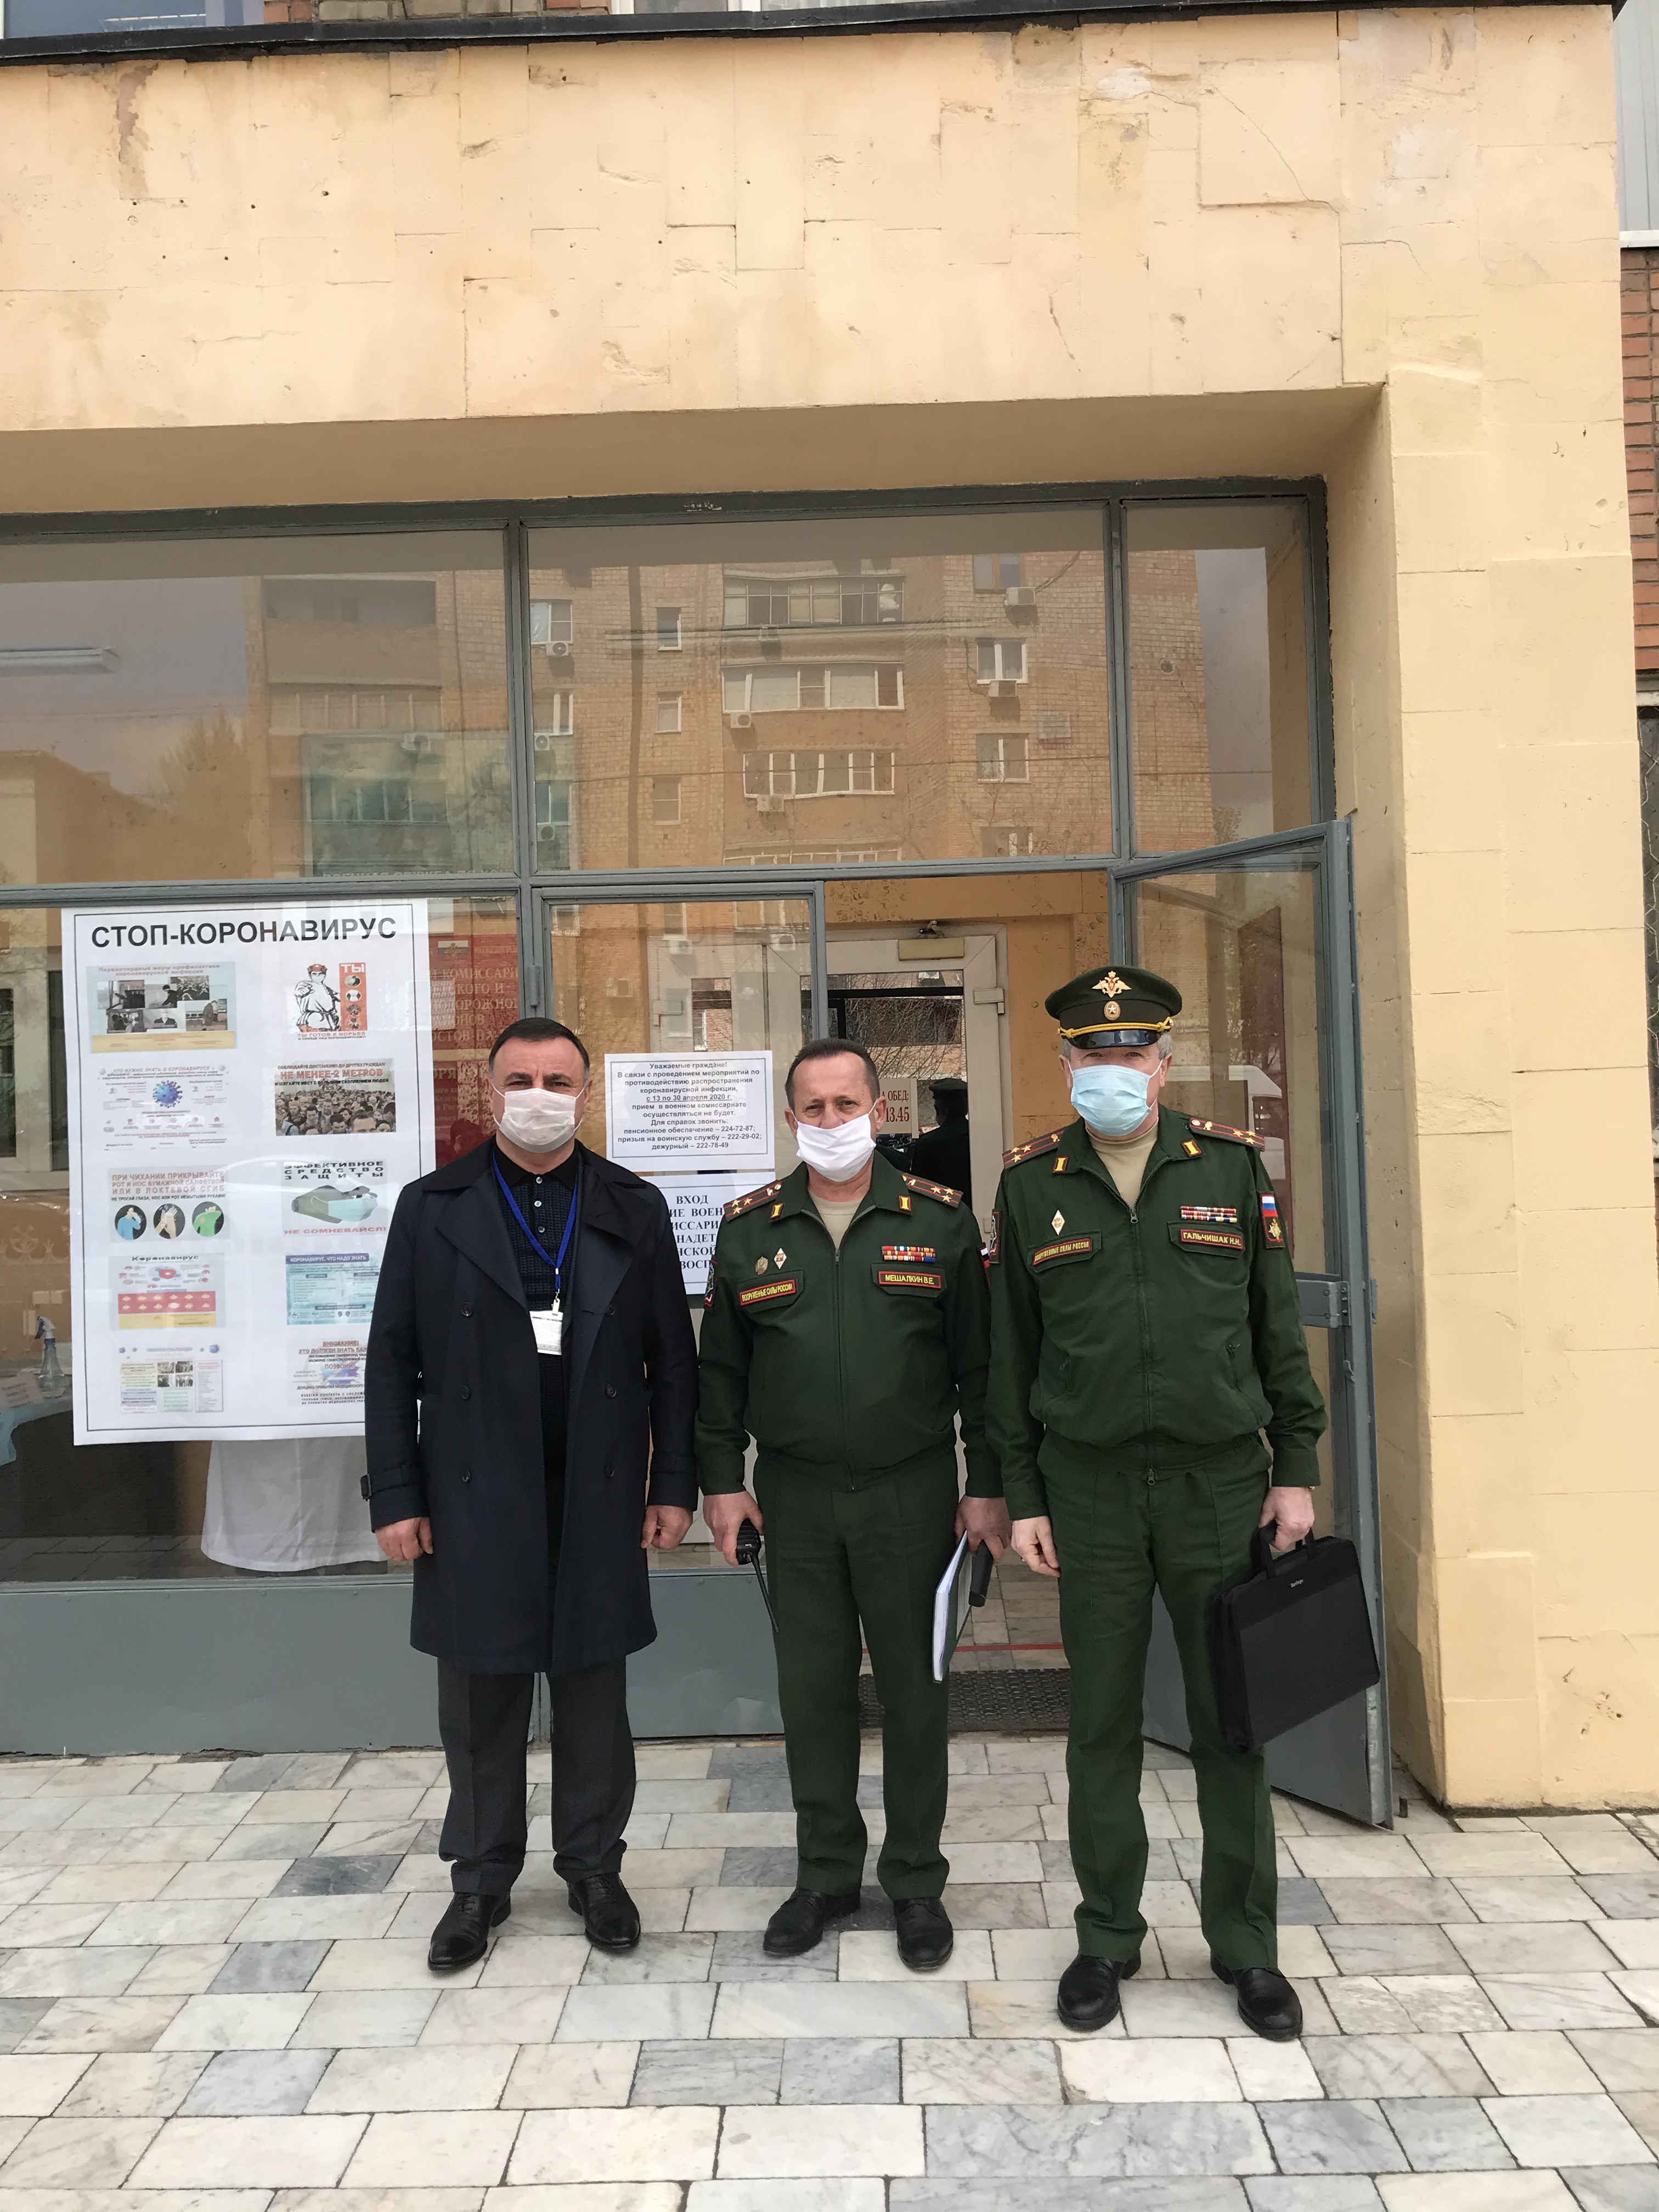 Арутюн Сурмалян обеспечил областной военкомат средствами индивидуальной защиты и антисептиками 